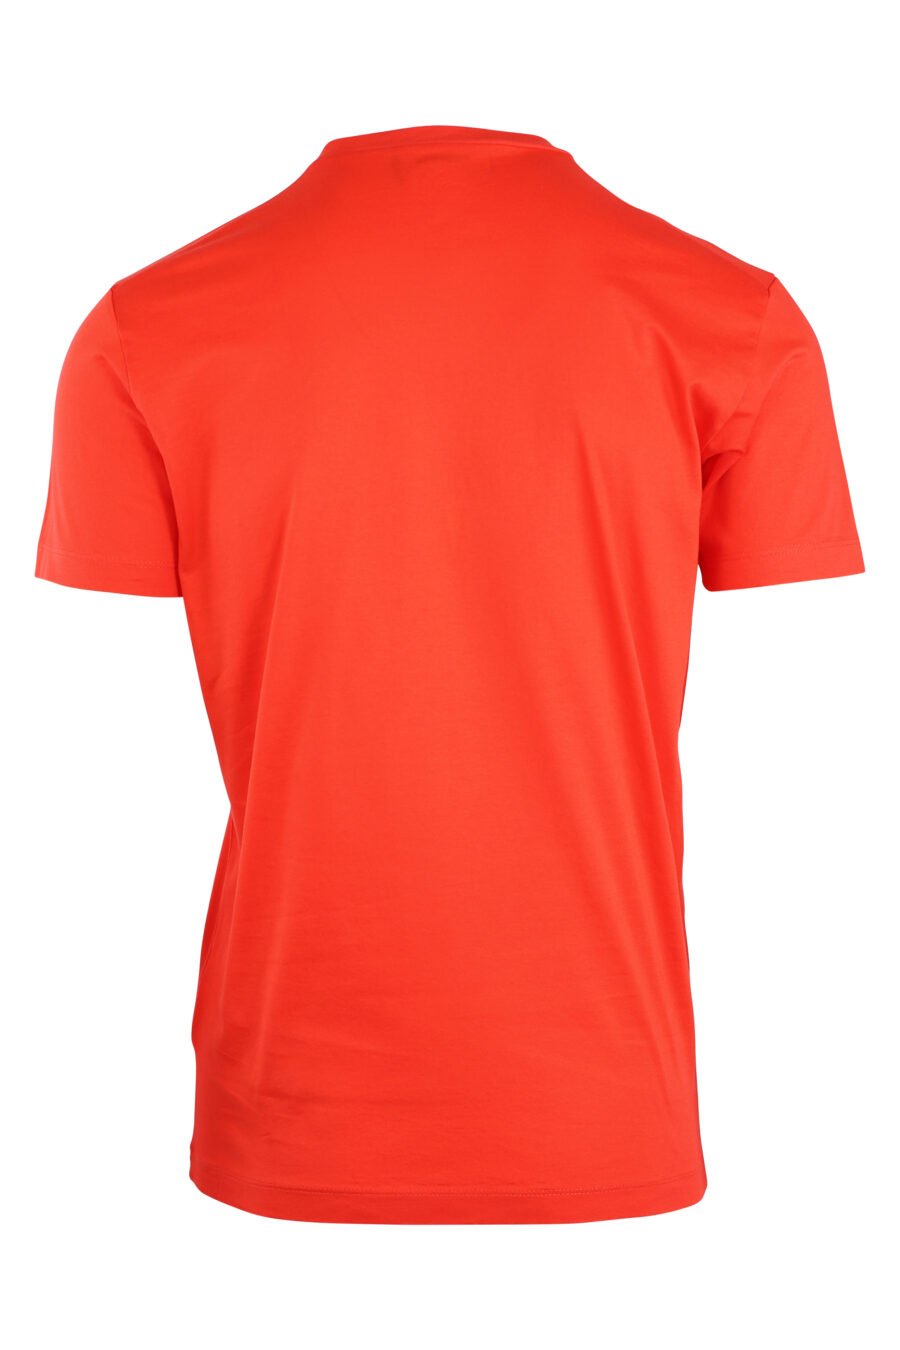 T-shirt orange avec minilogue "icon" - IMG 8925